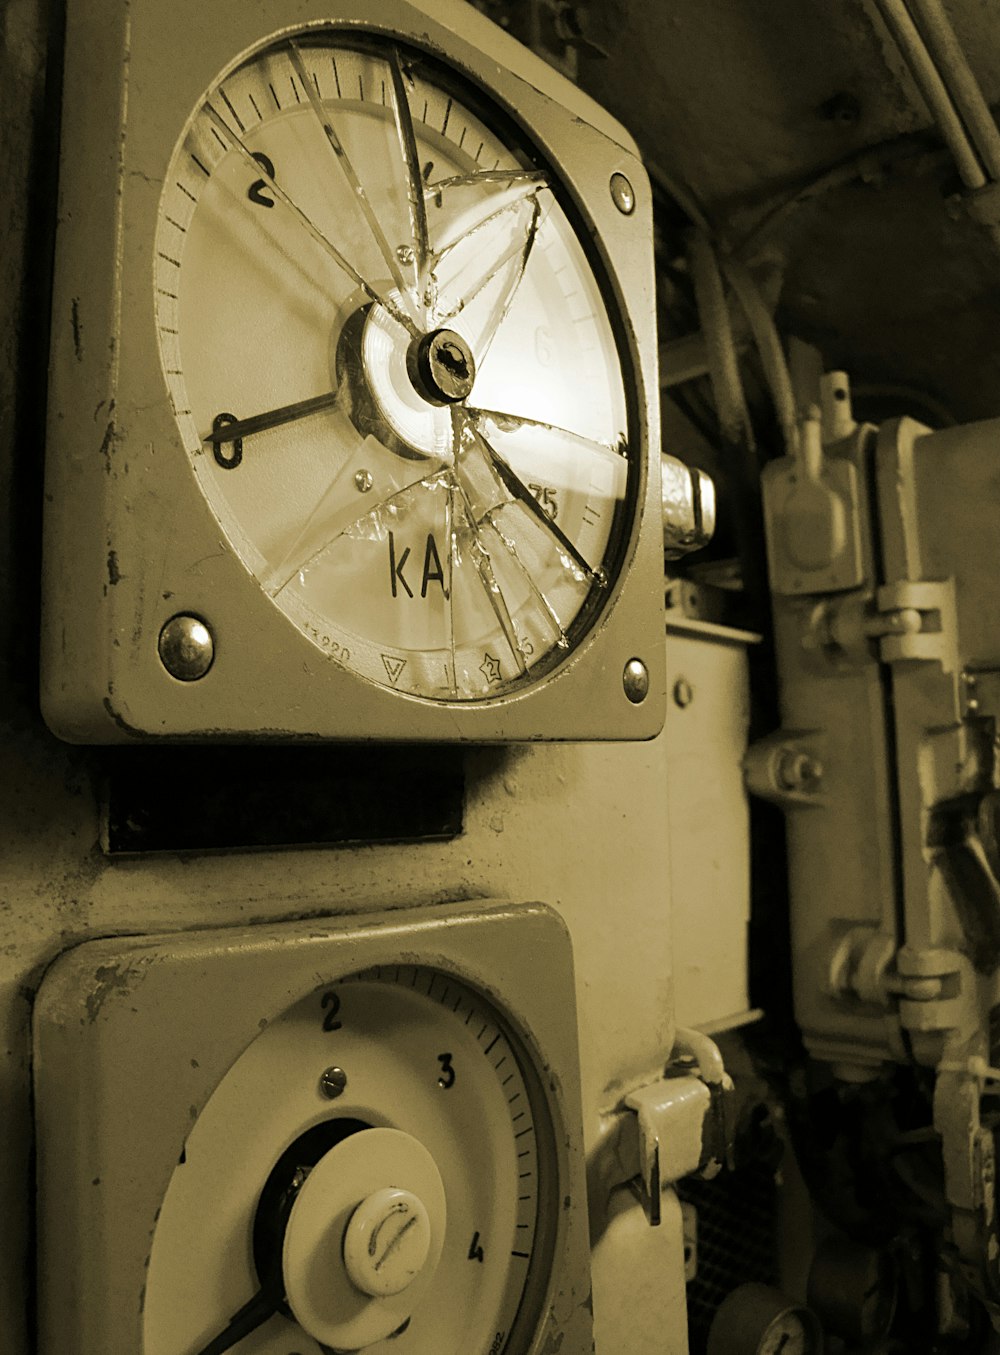 a close up of a clock on a machine